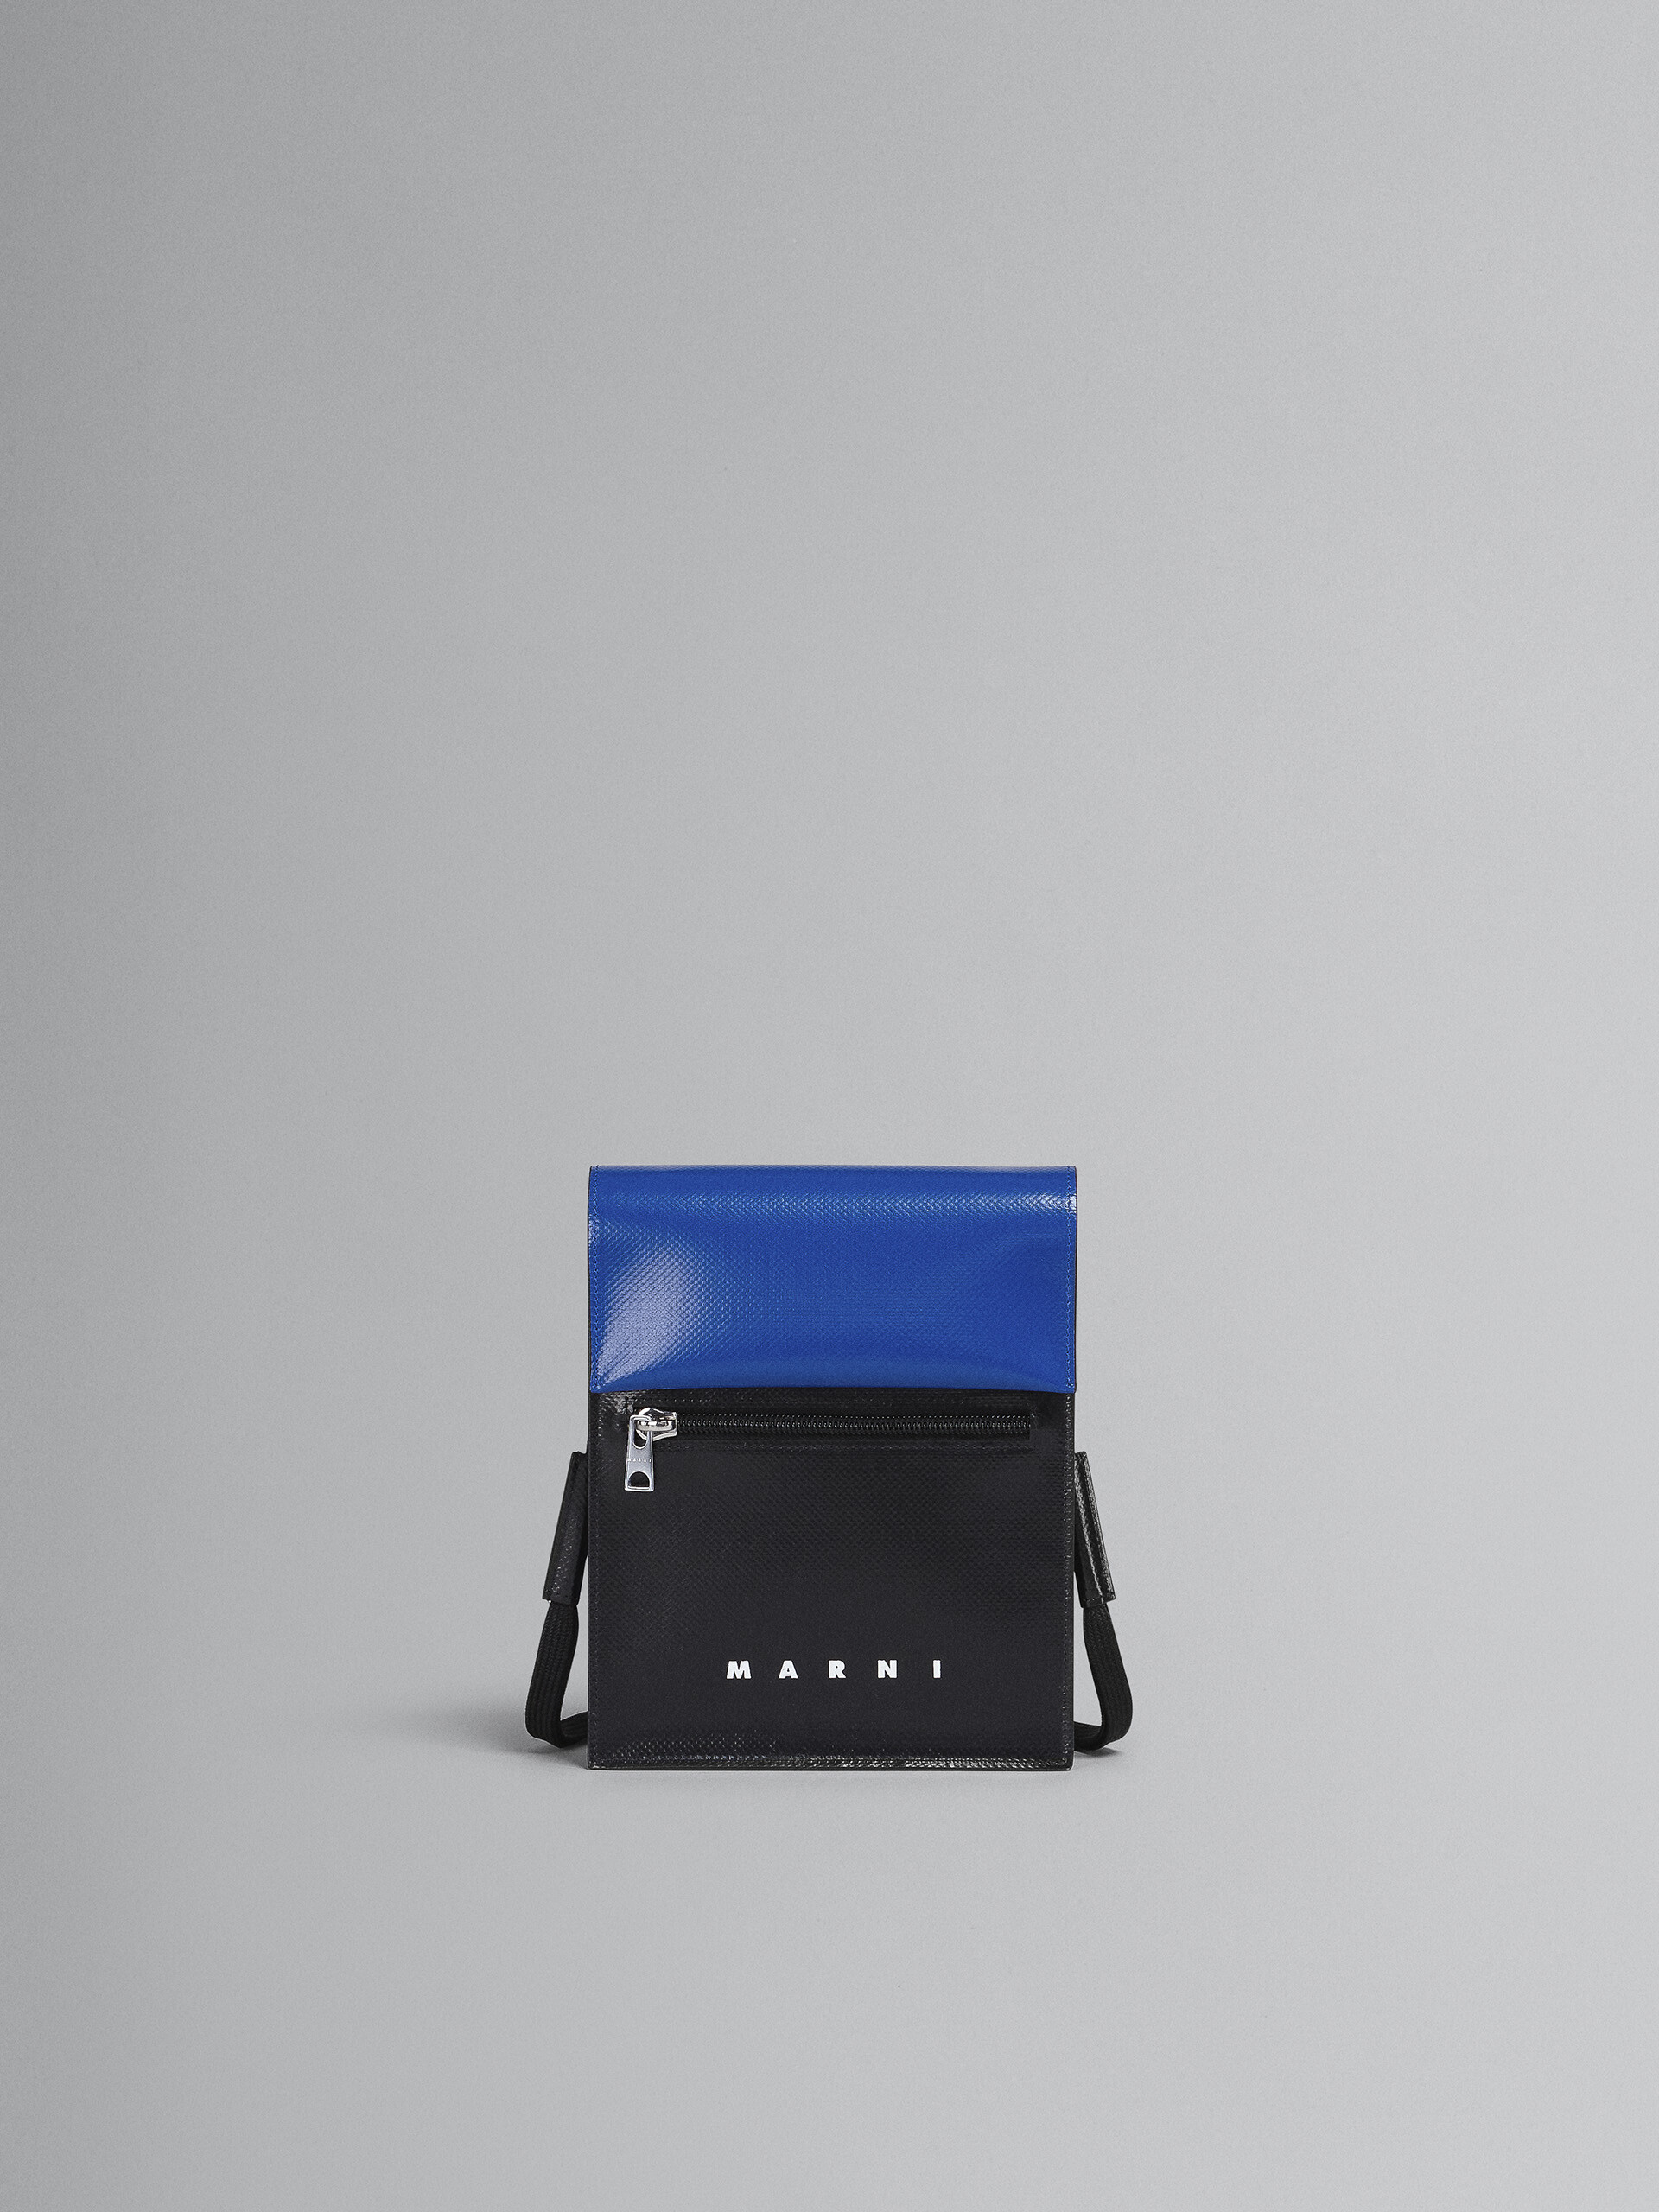 Tribeca shoulder bag in blue and black - Shoulder Bags - Image 1